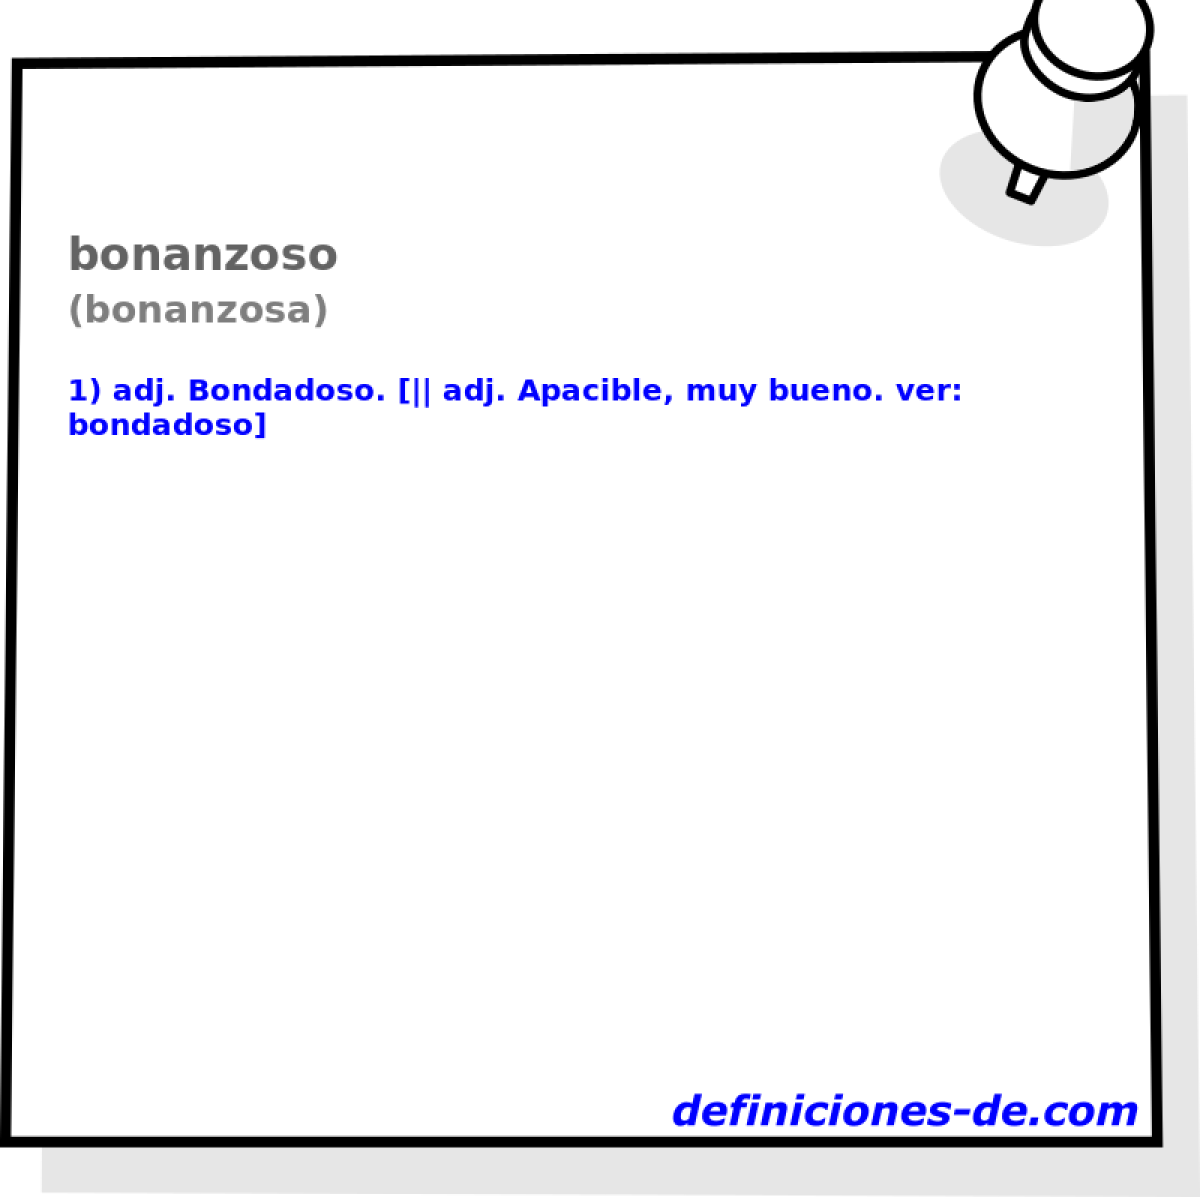 bonanzoso (bonanzosa)